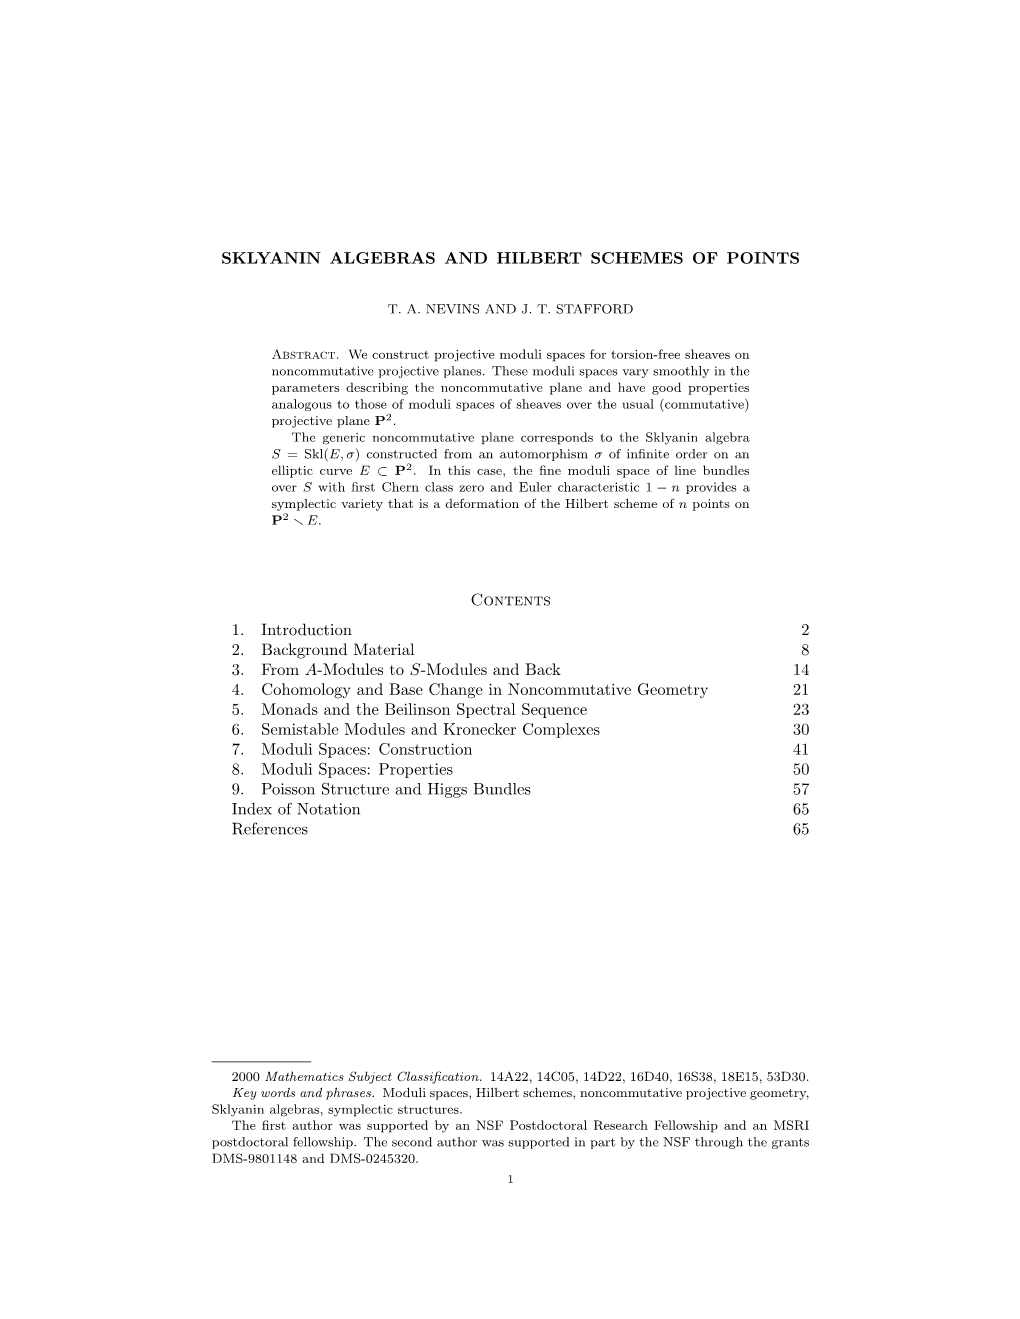 Sklyanin Algebras and Hilbert Schemes of Points